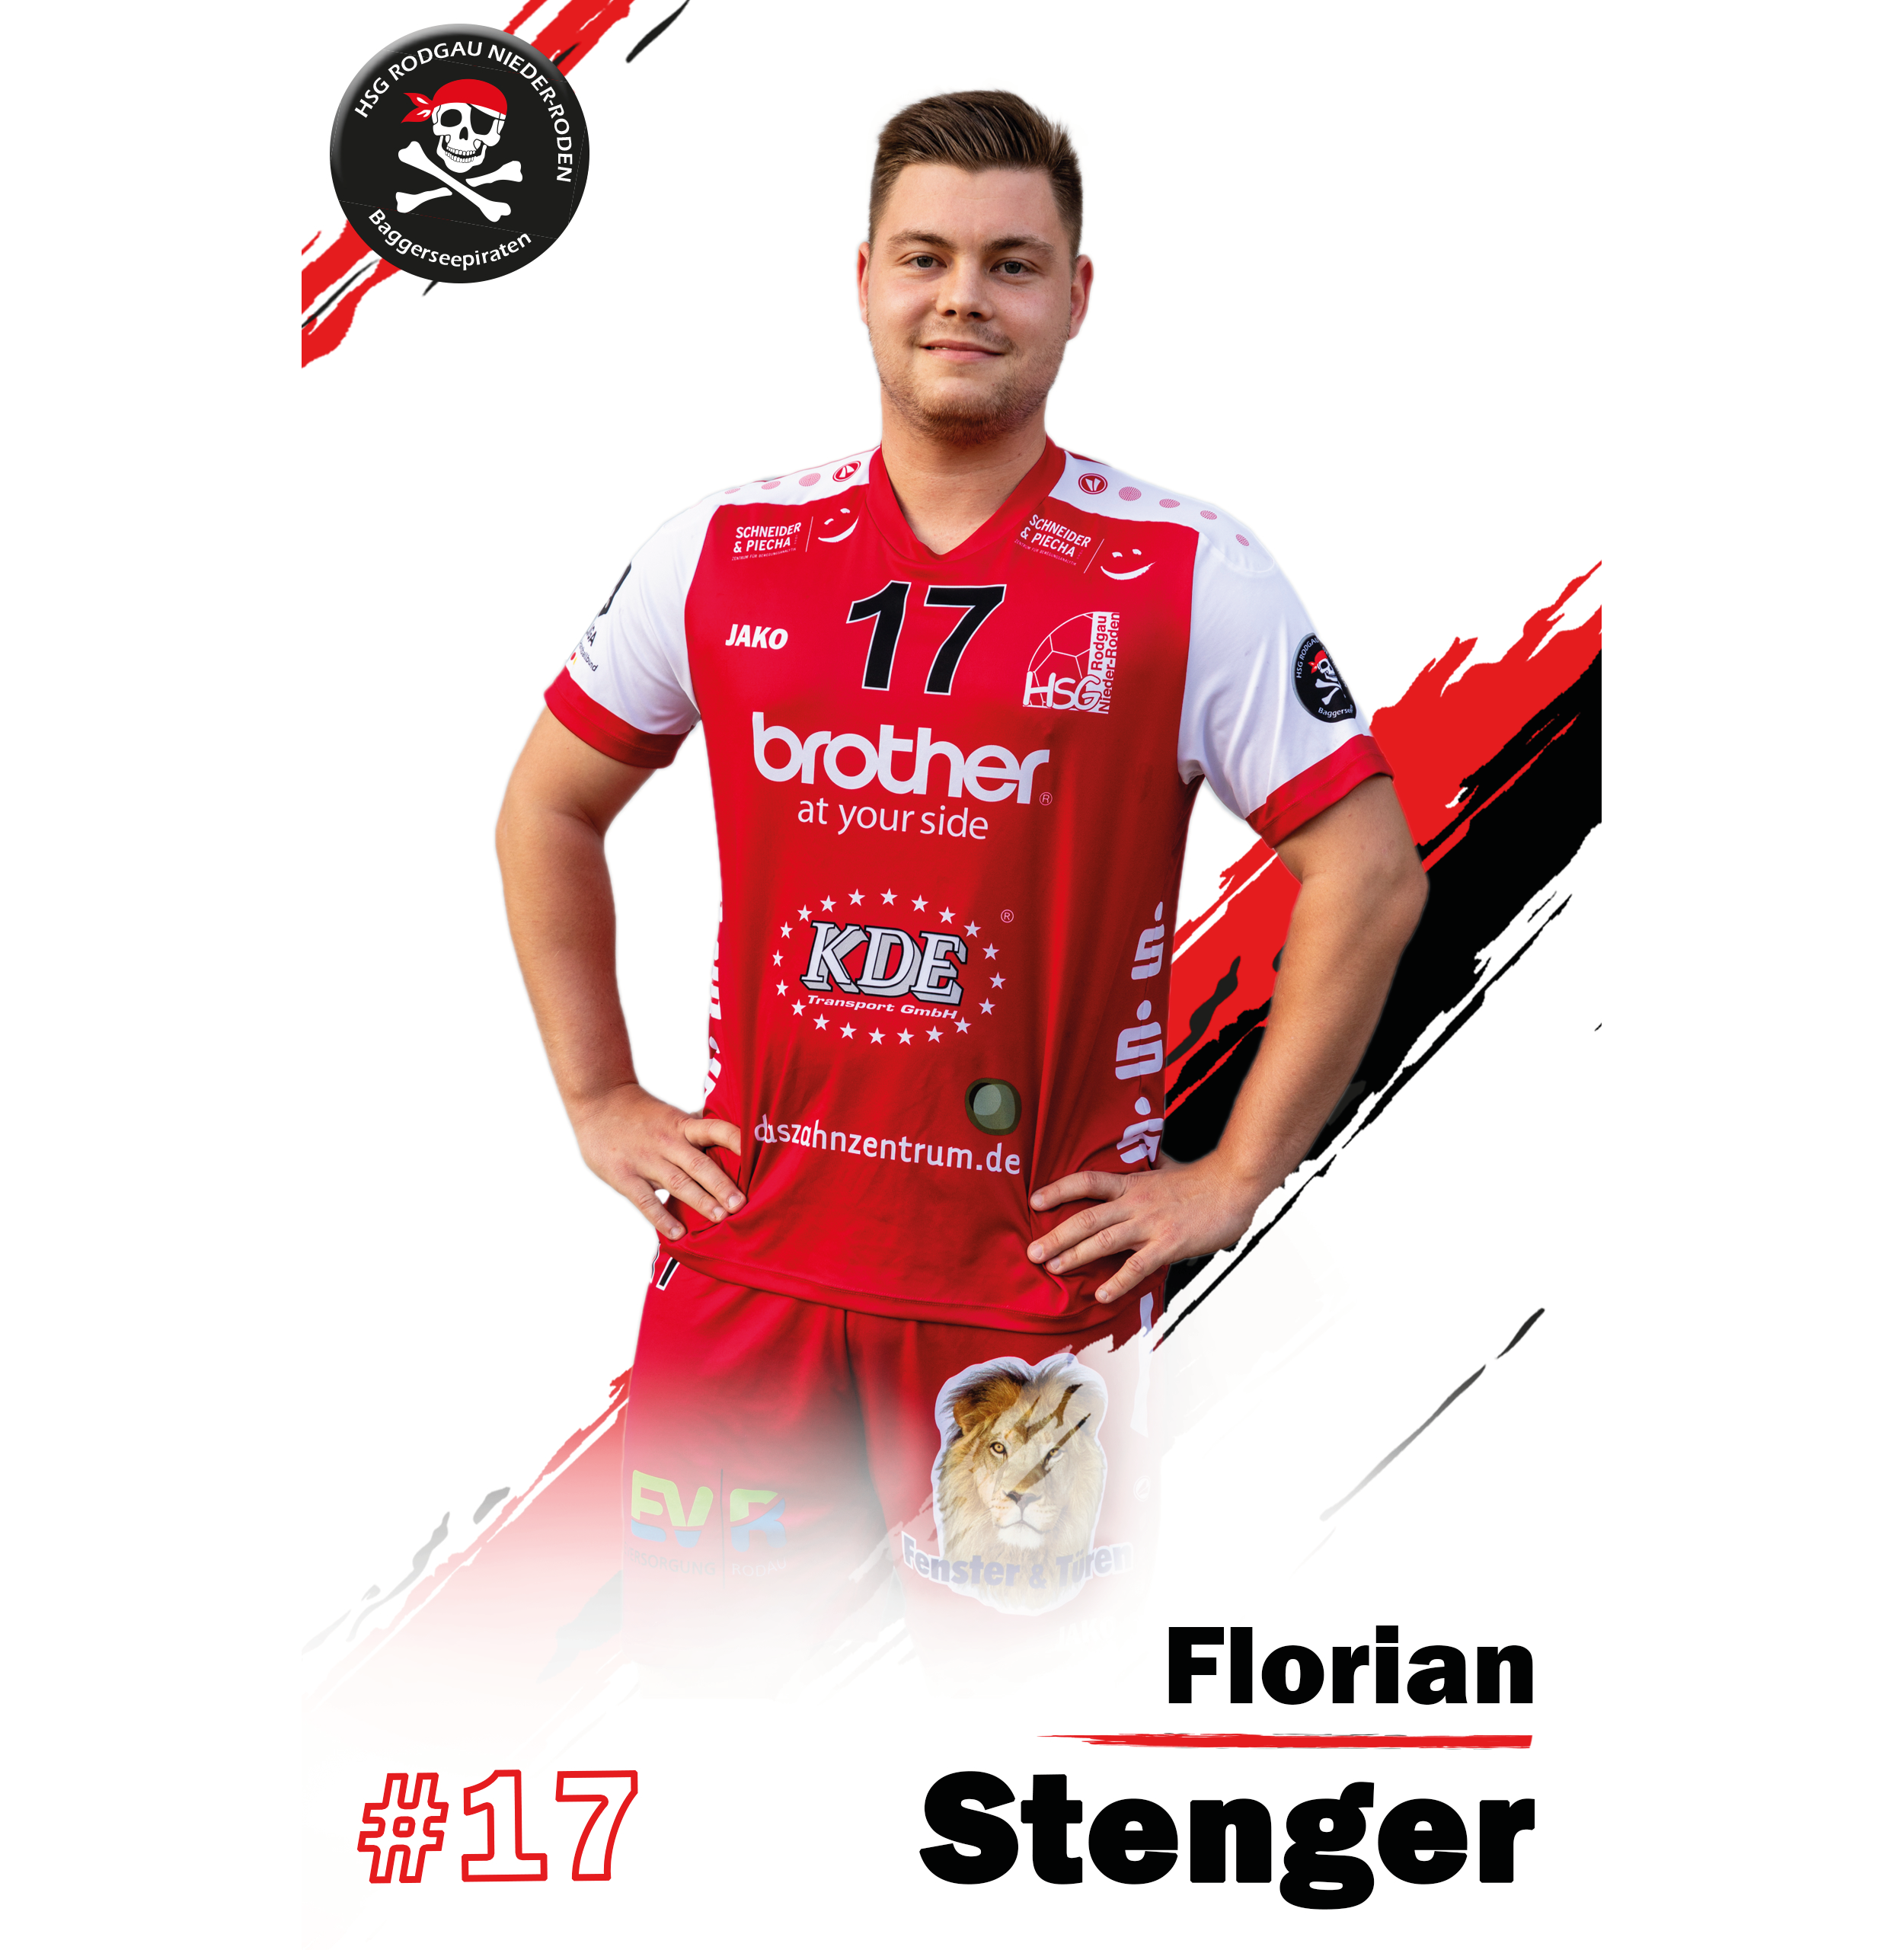 Florian Stenger